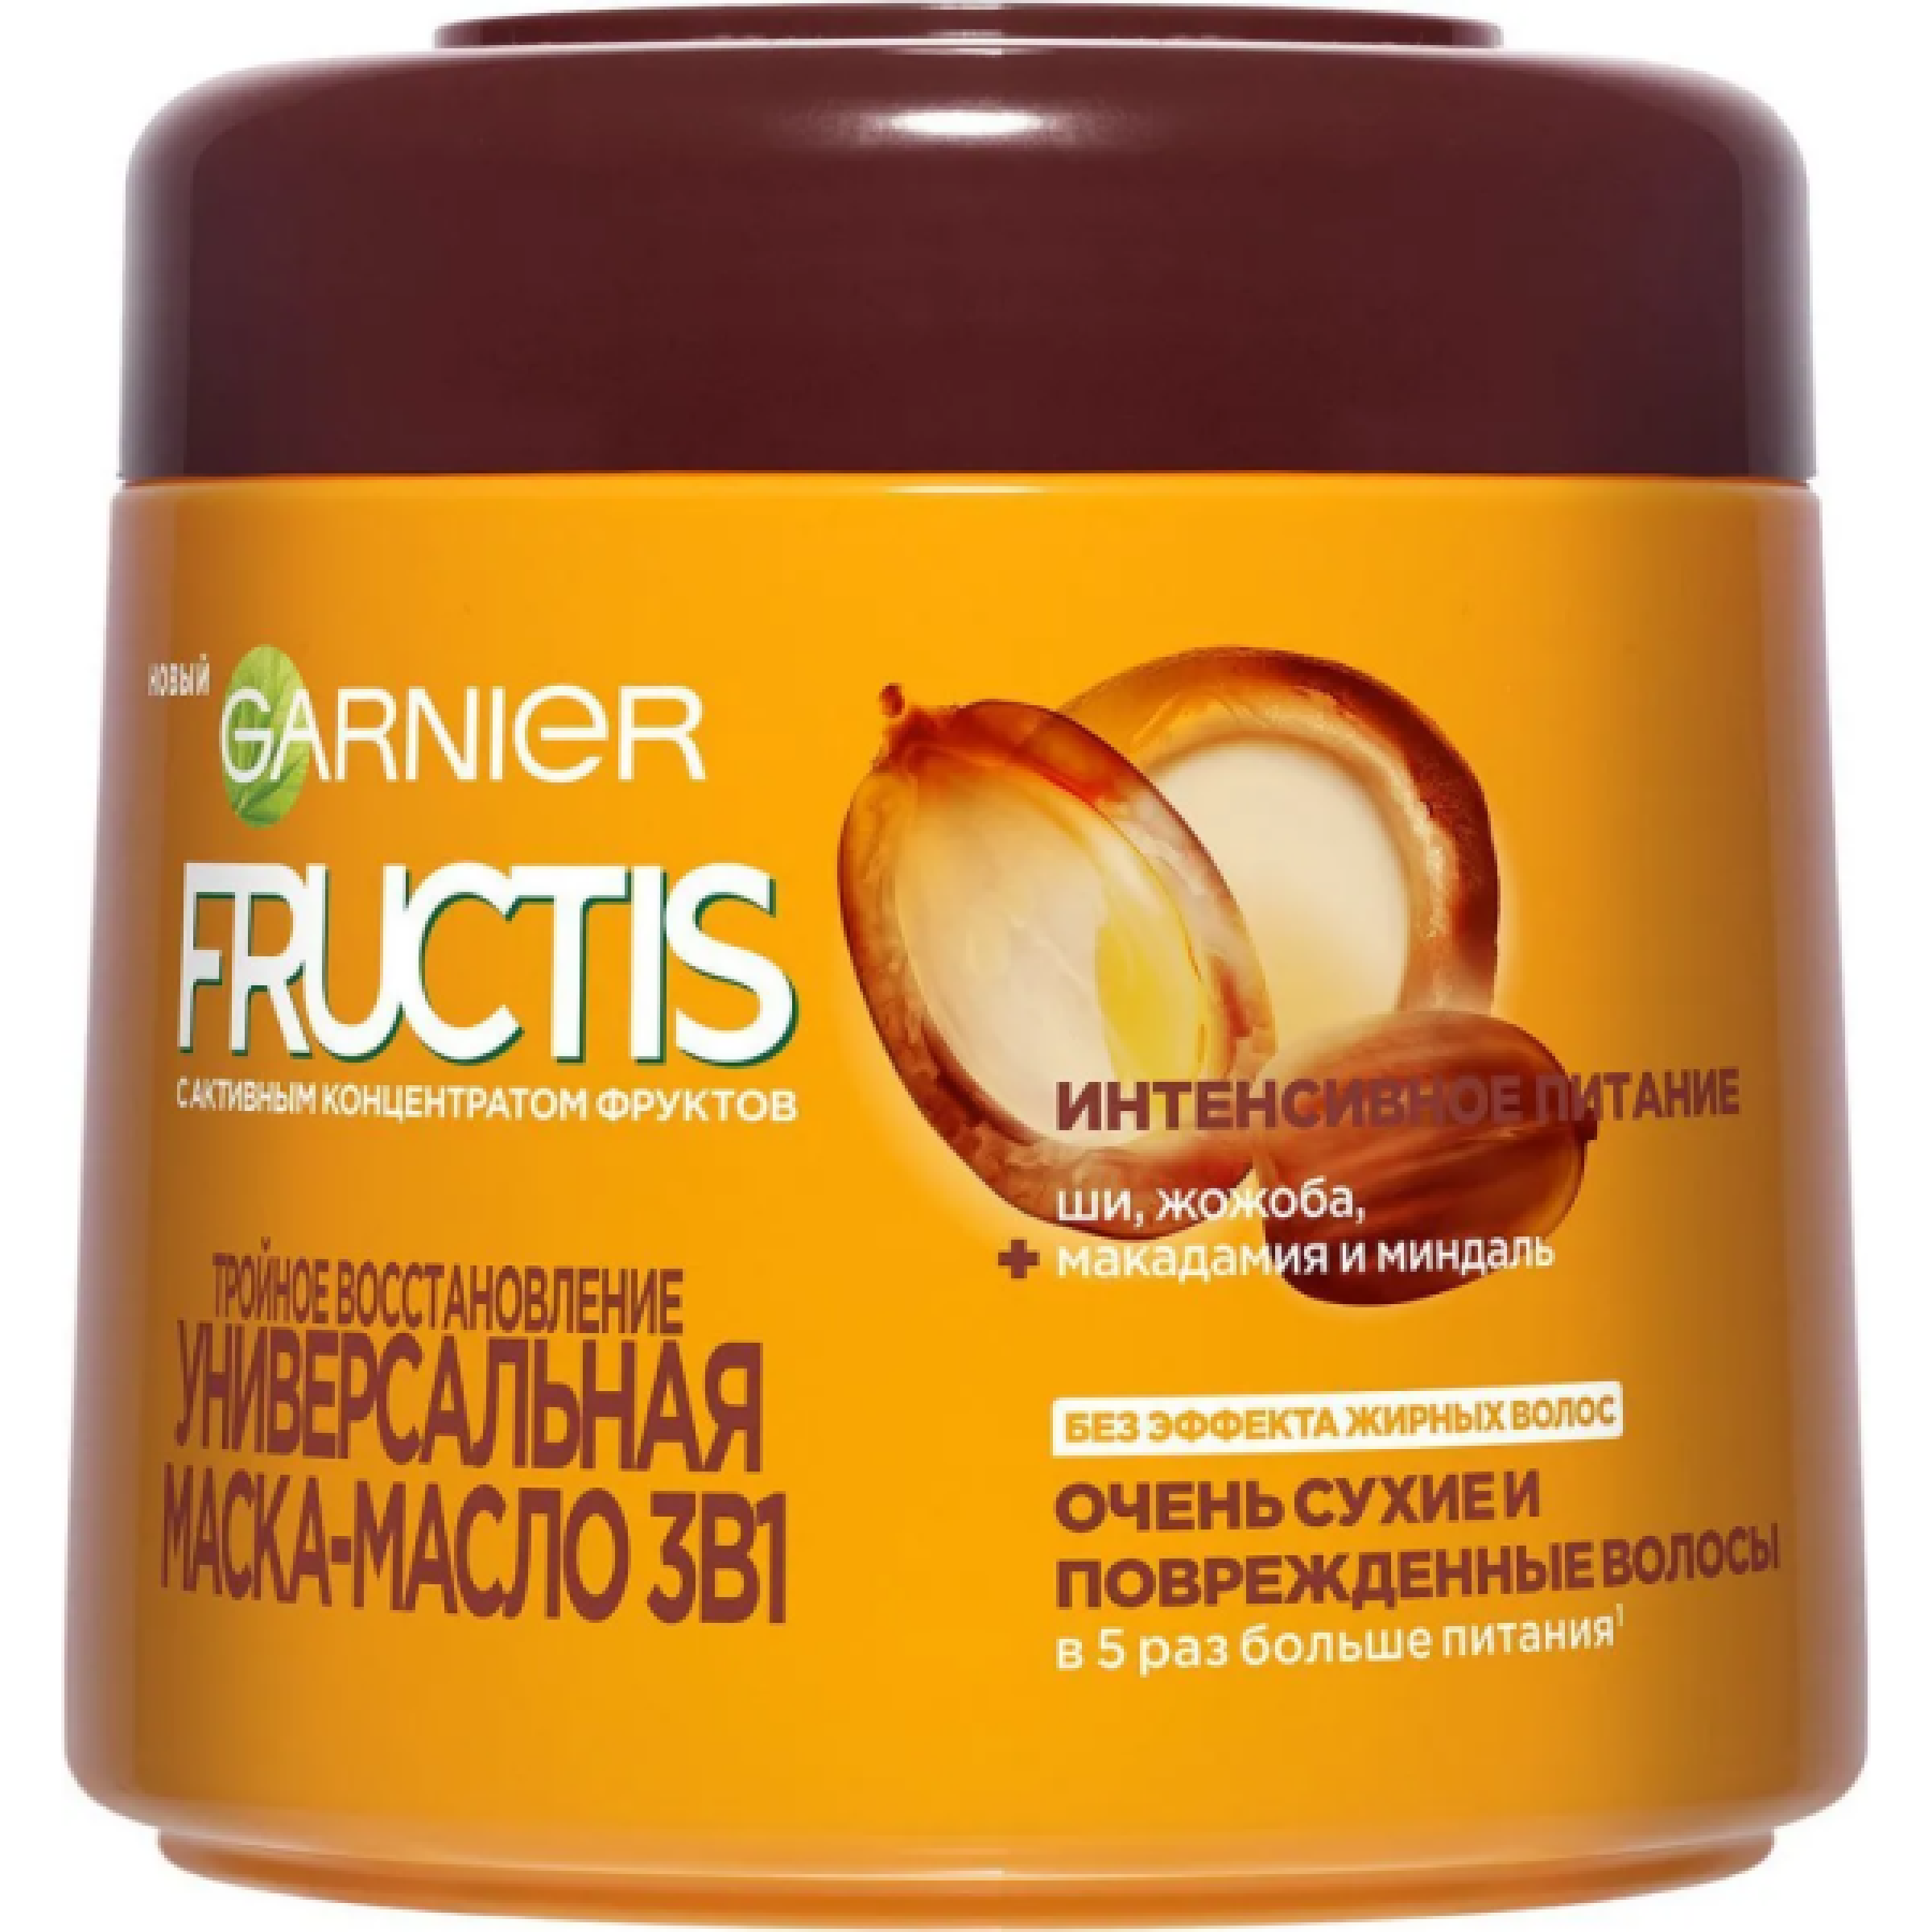 Универсальная масло-маска для волос Garnier Fructis 3в1 Тройное Восстановление для очень сухих и поврежденных волос, 300 мл